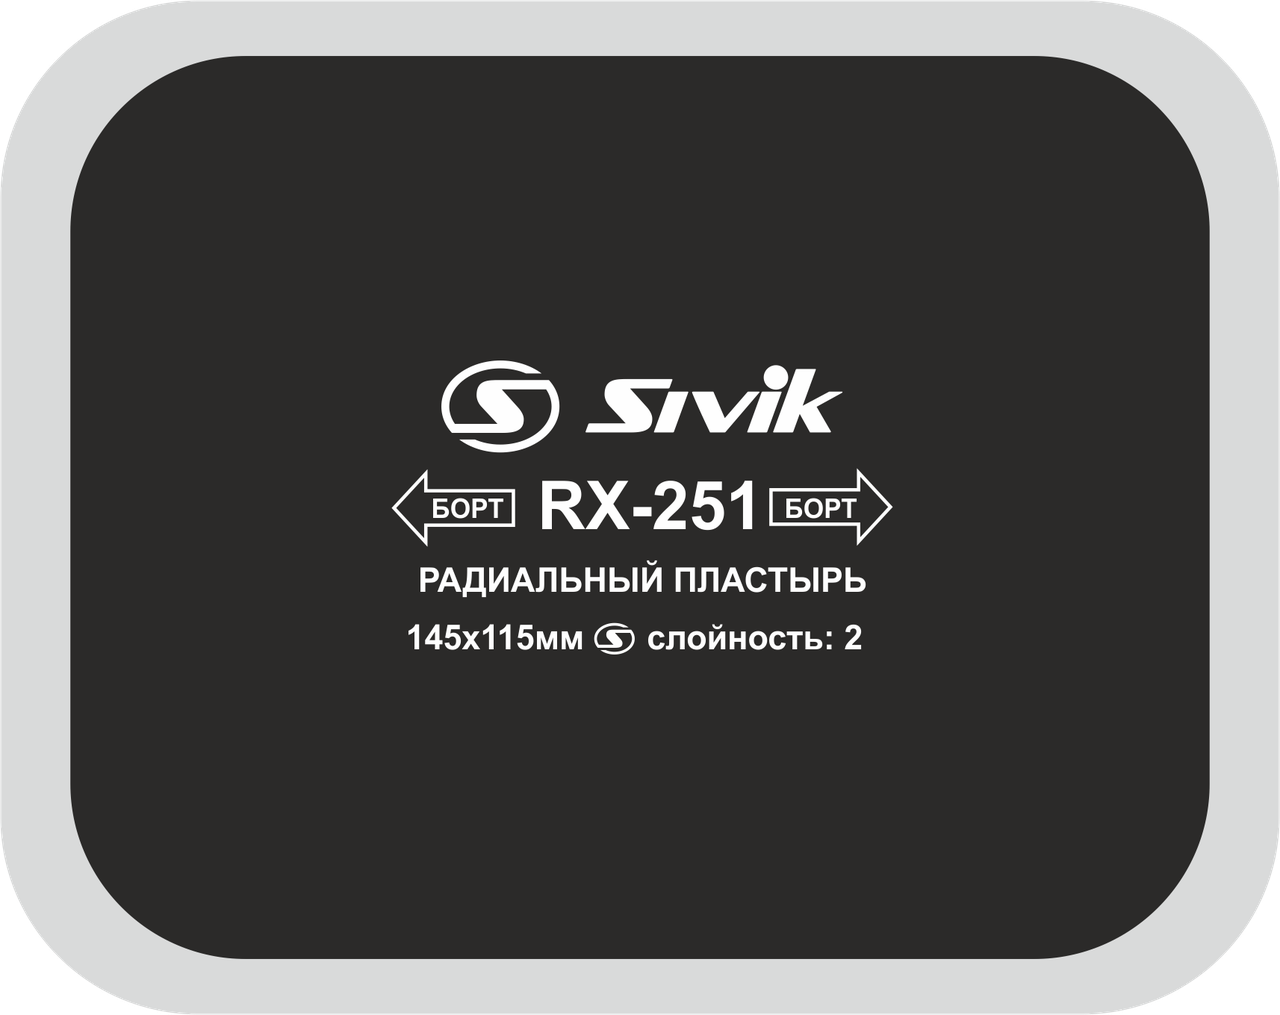 Sivik Пластырь радиальный RX-251